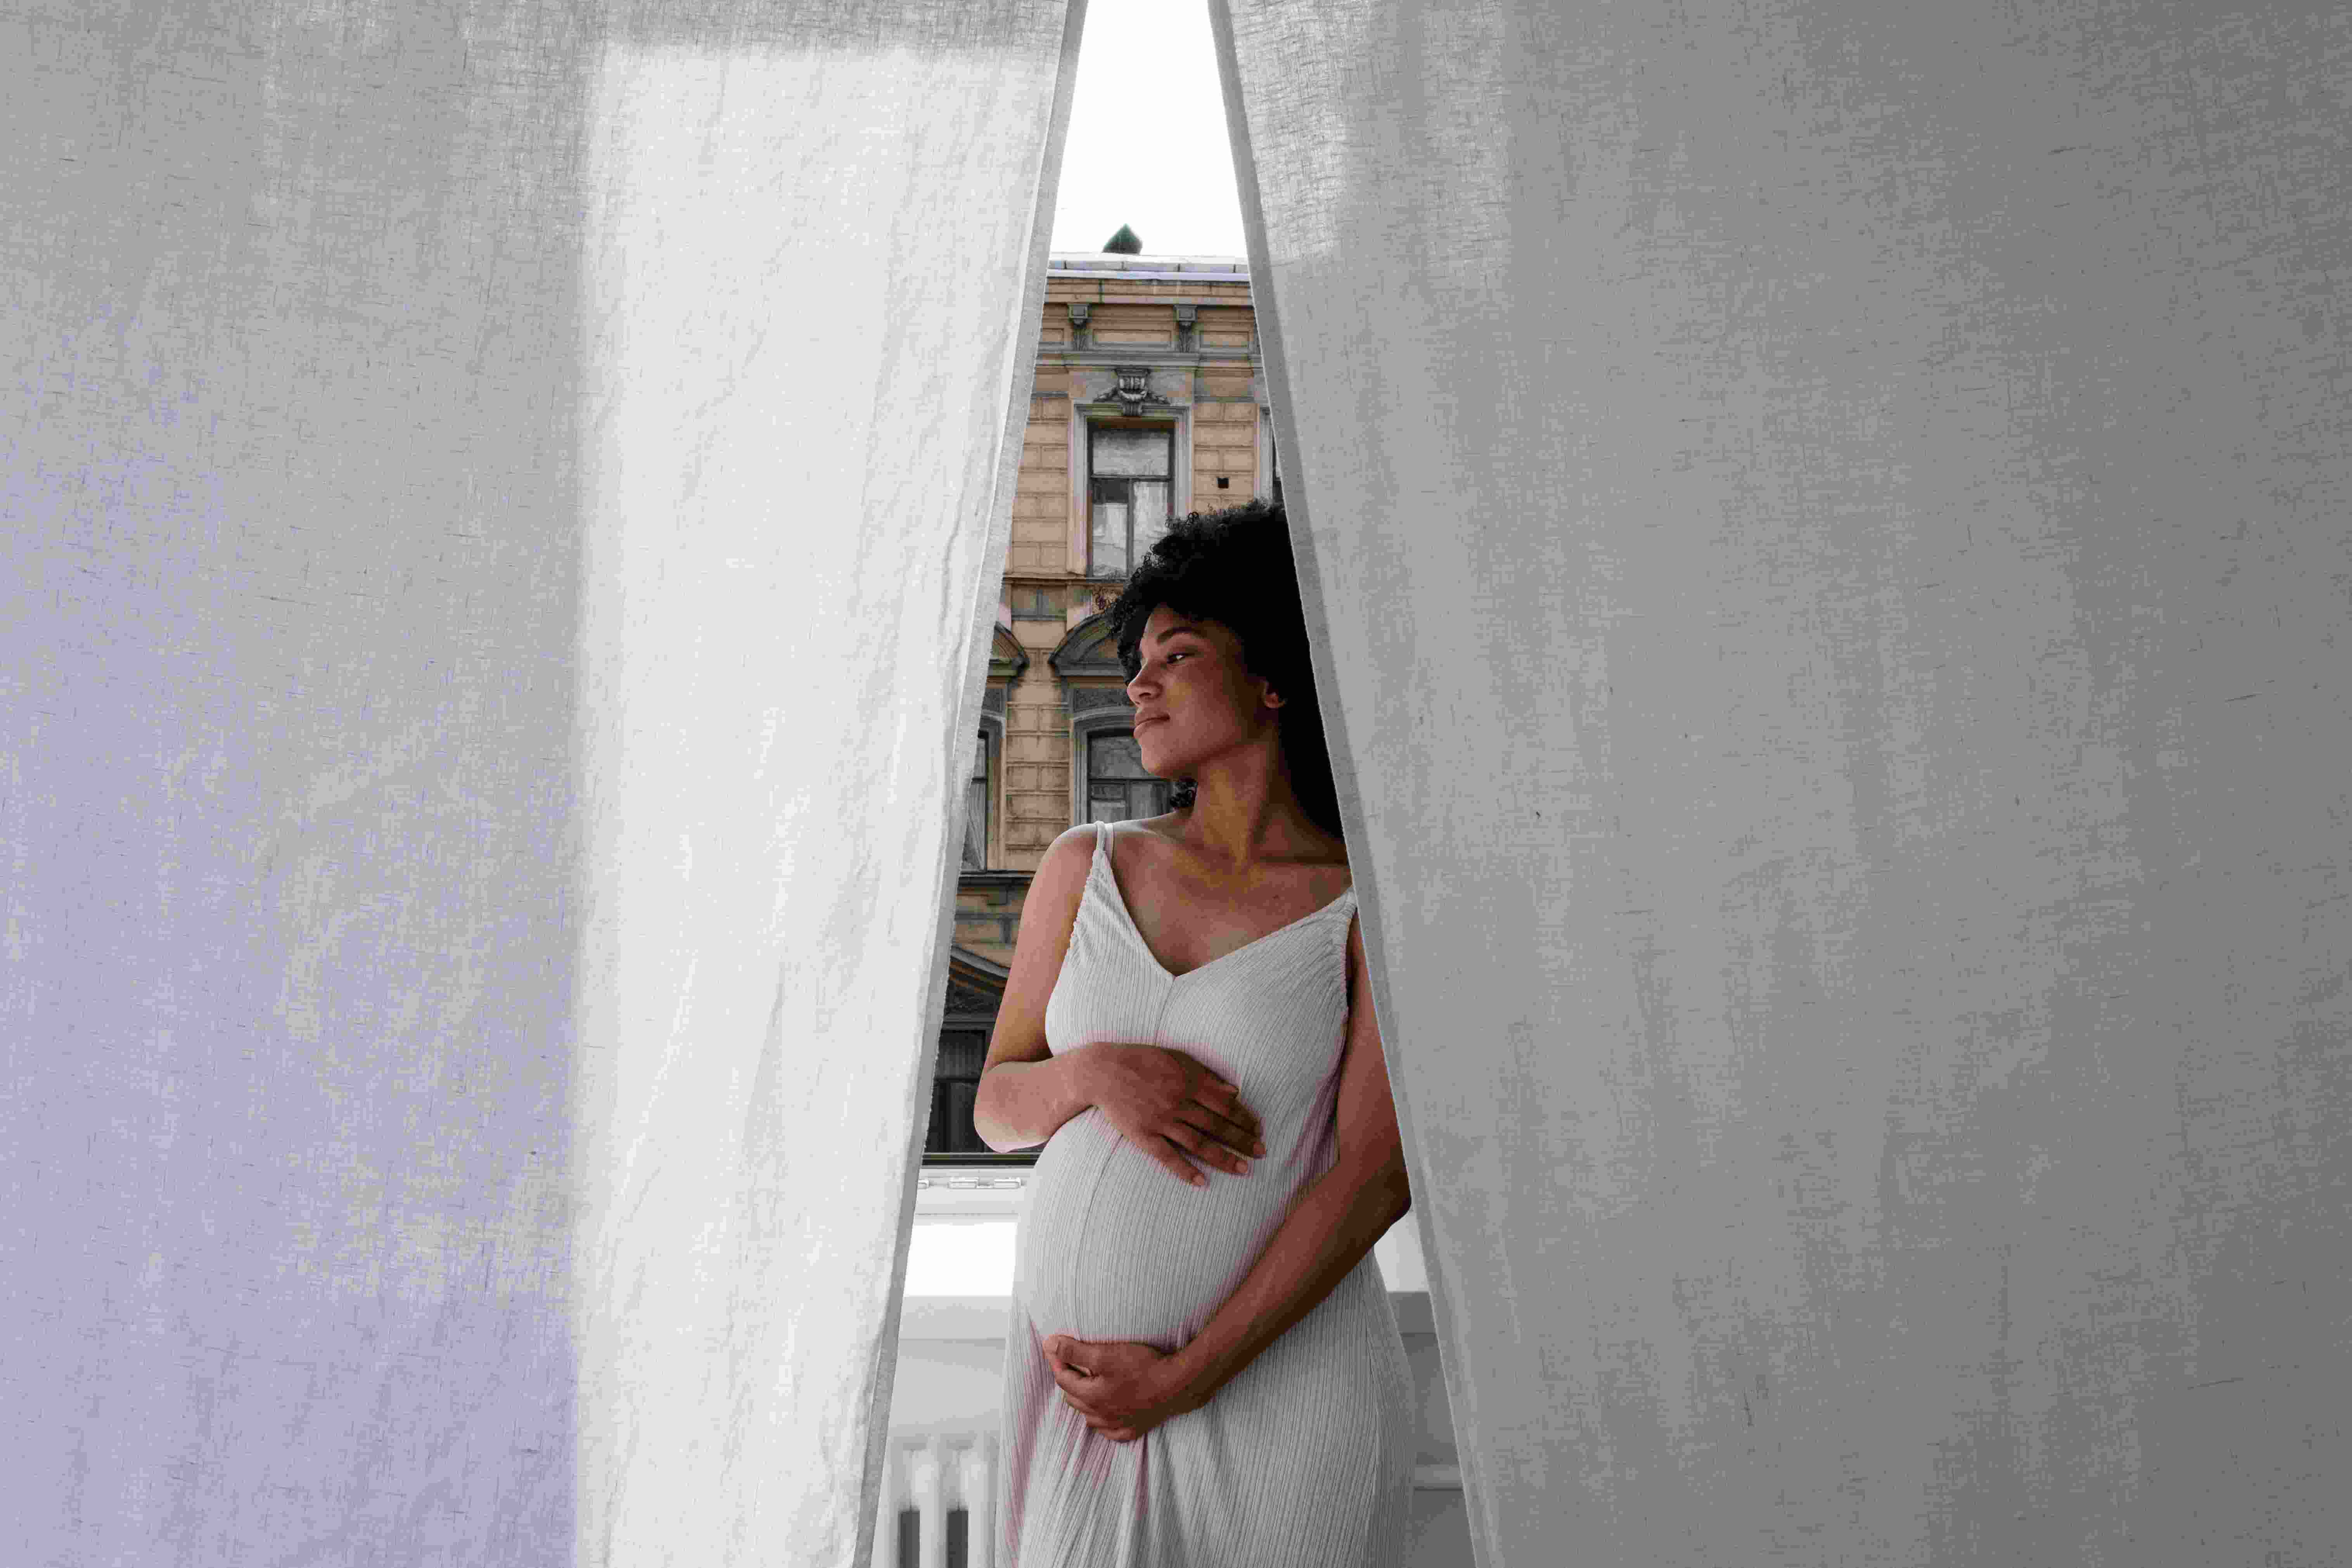 Cinta modeladora pode ser utilizada pós-parto ou durante a gravidez, com cautela